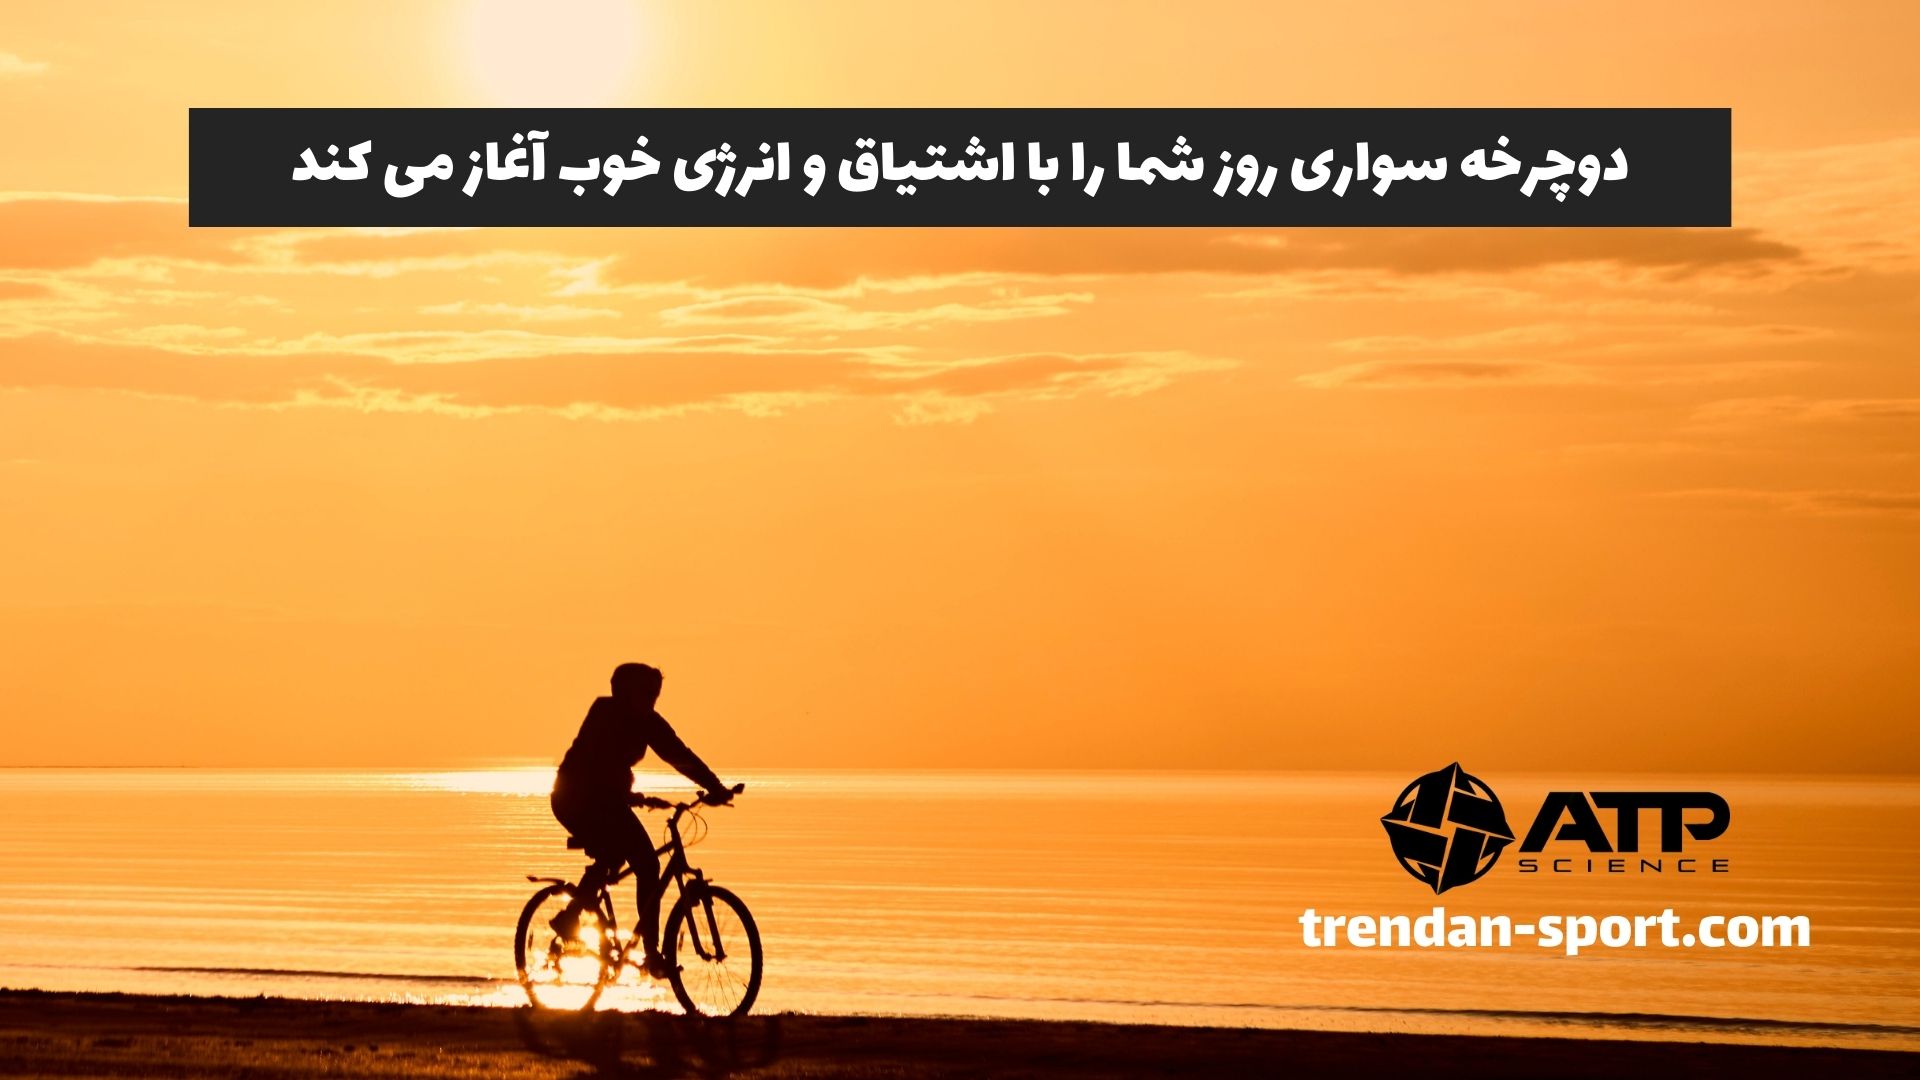 دوچرخه سواری روز شما را با اشتیاق و انرژی خوب آغاز می کند